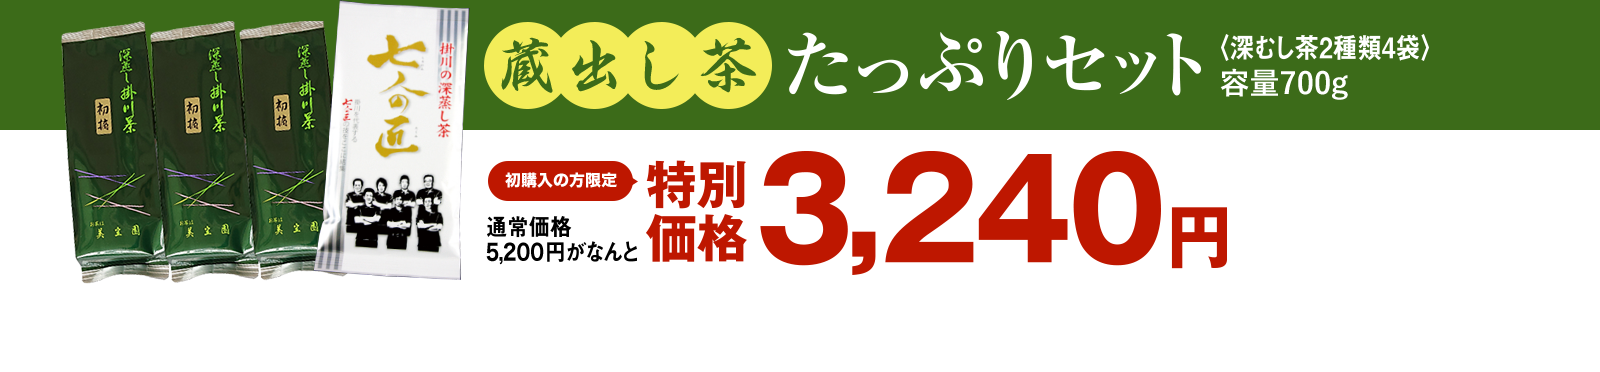 新茶たっぷりセット 特別価格3,240円